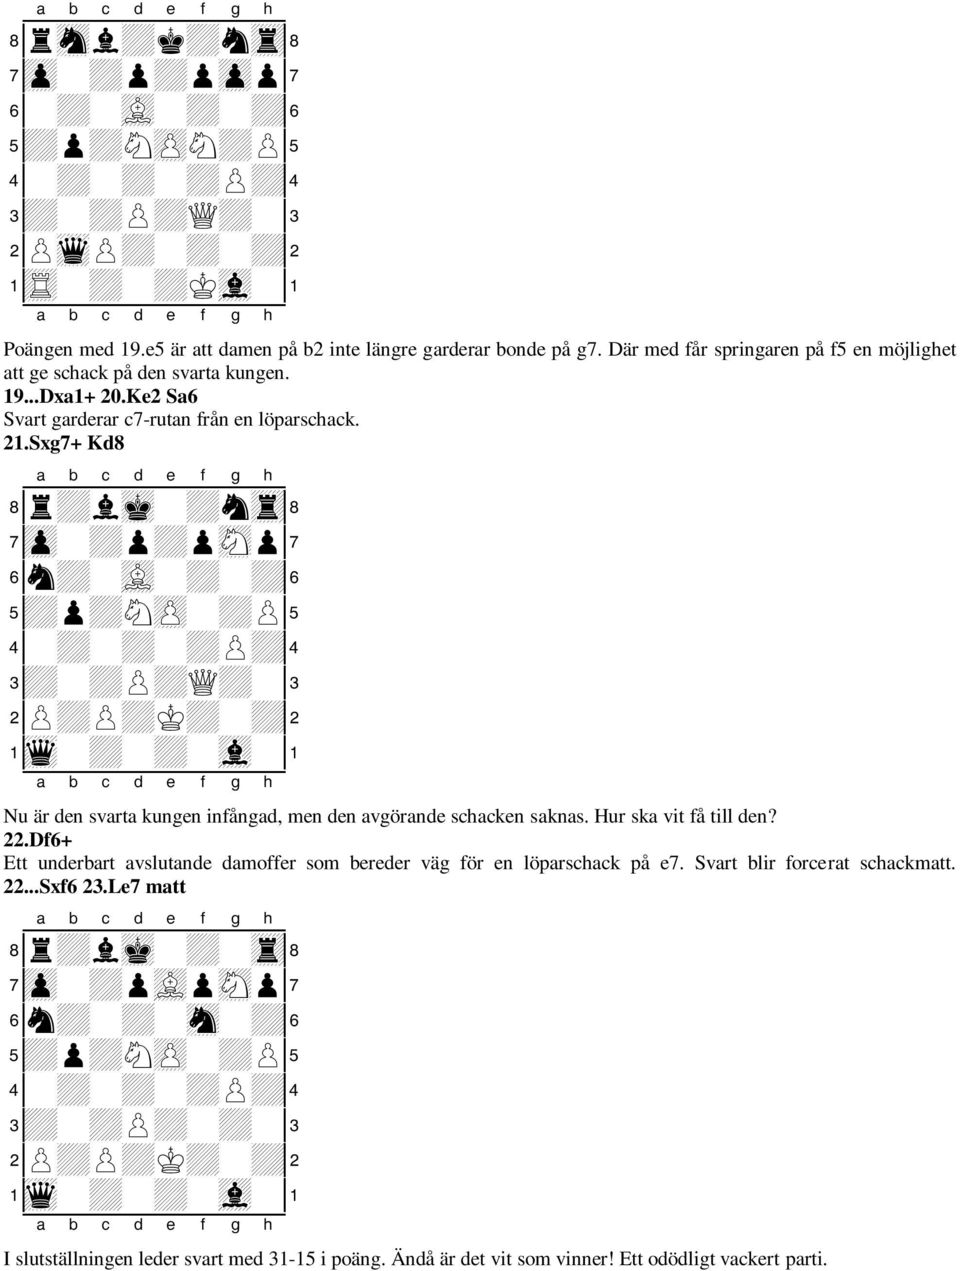 Sxg7+ Kd8 8r+lmk-+ntr( 7zp-+p+psNp' 6n+-vL-+-+& 5+p+NzP-+P% 4-+-+-+P+$ 3+-+P+Q+-# 2P+P+K+-+" 1wq-+-+-vl-! Nu är den svarta kungen infångad, men den avgörande schacken saknas. Hur ska vit få till den?